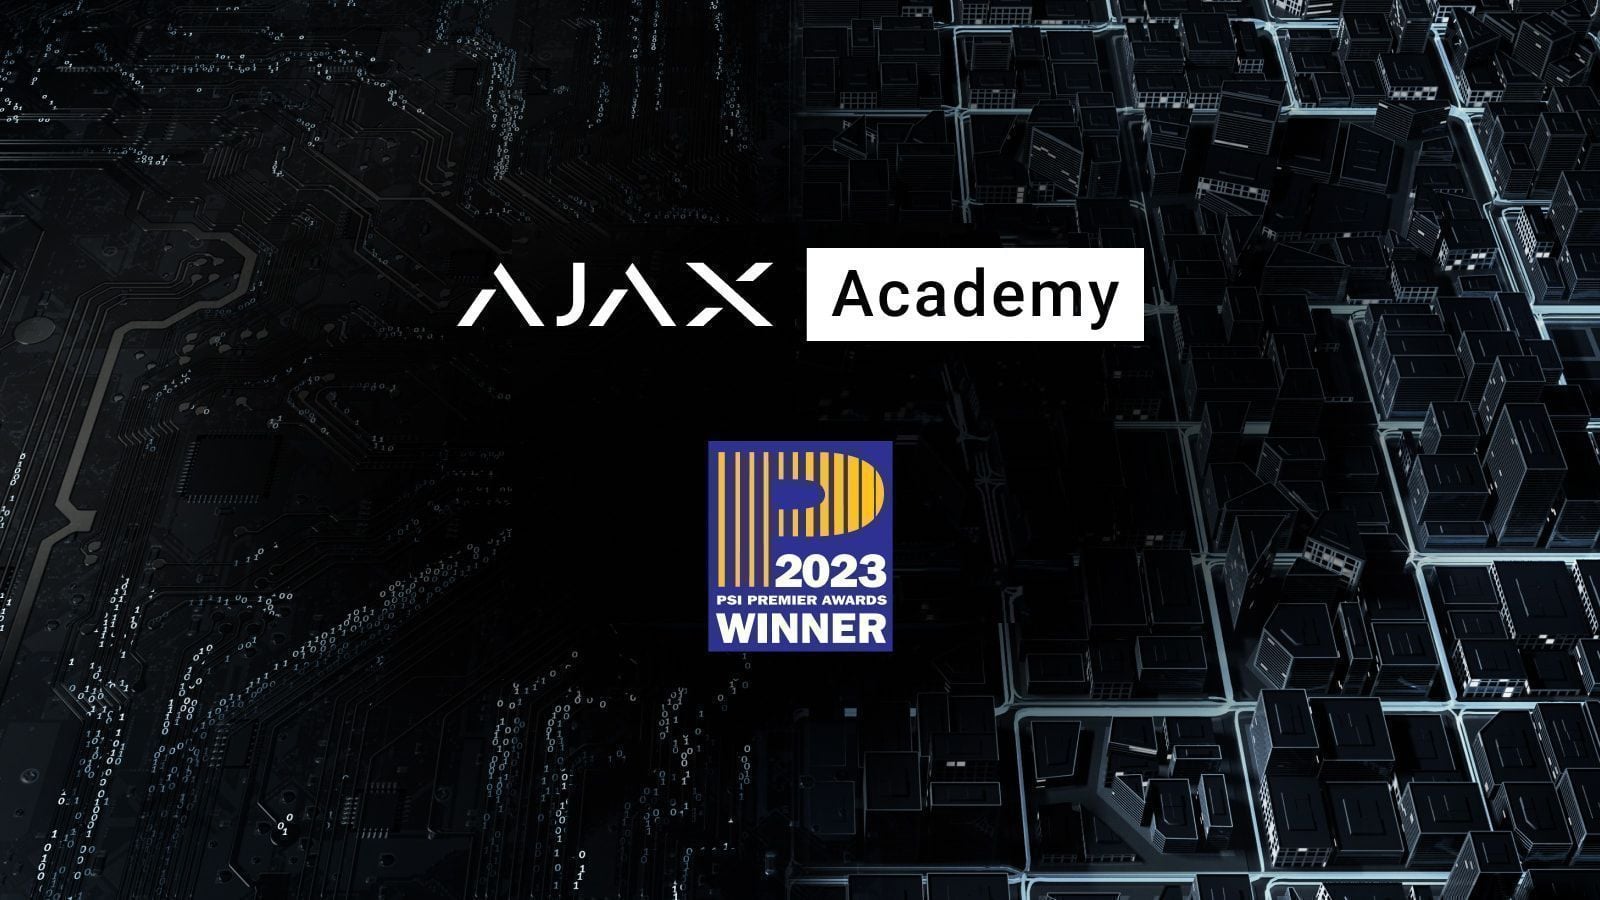 Ajax Academy виграла премію PSI Premier Awards 2023 як навчальна програма року для виробників